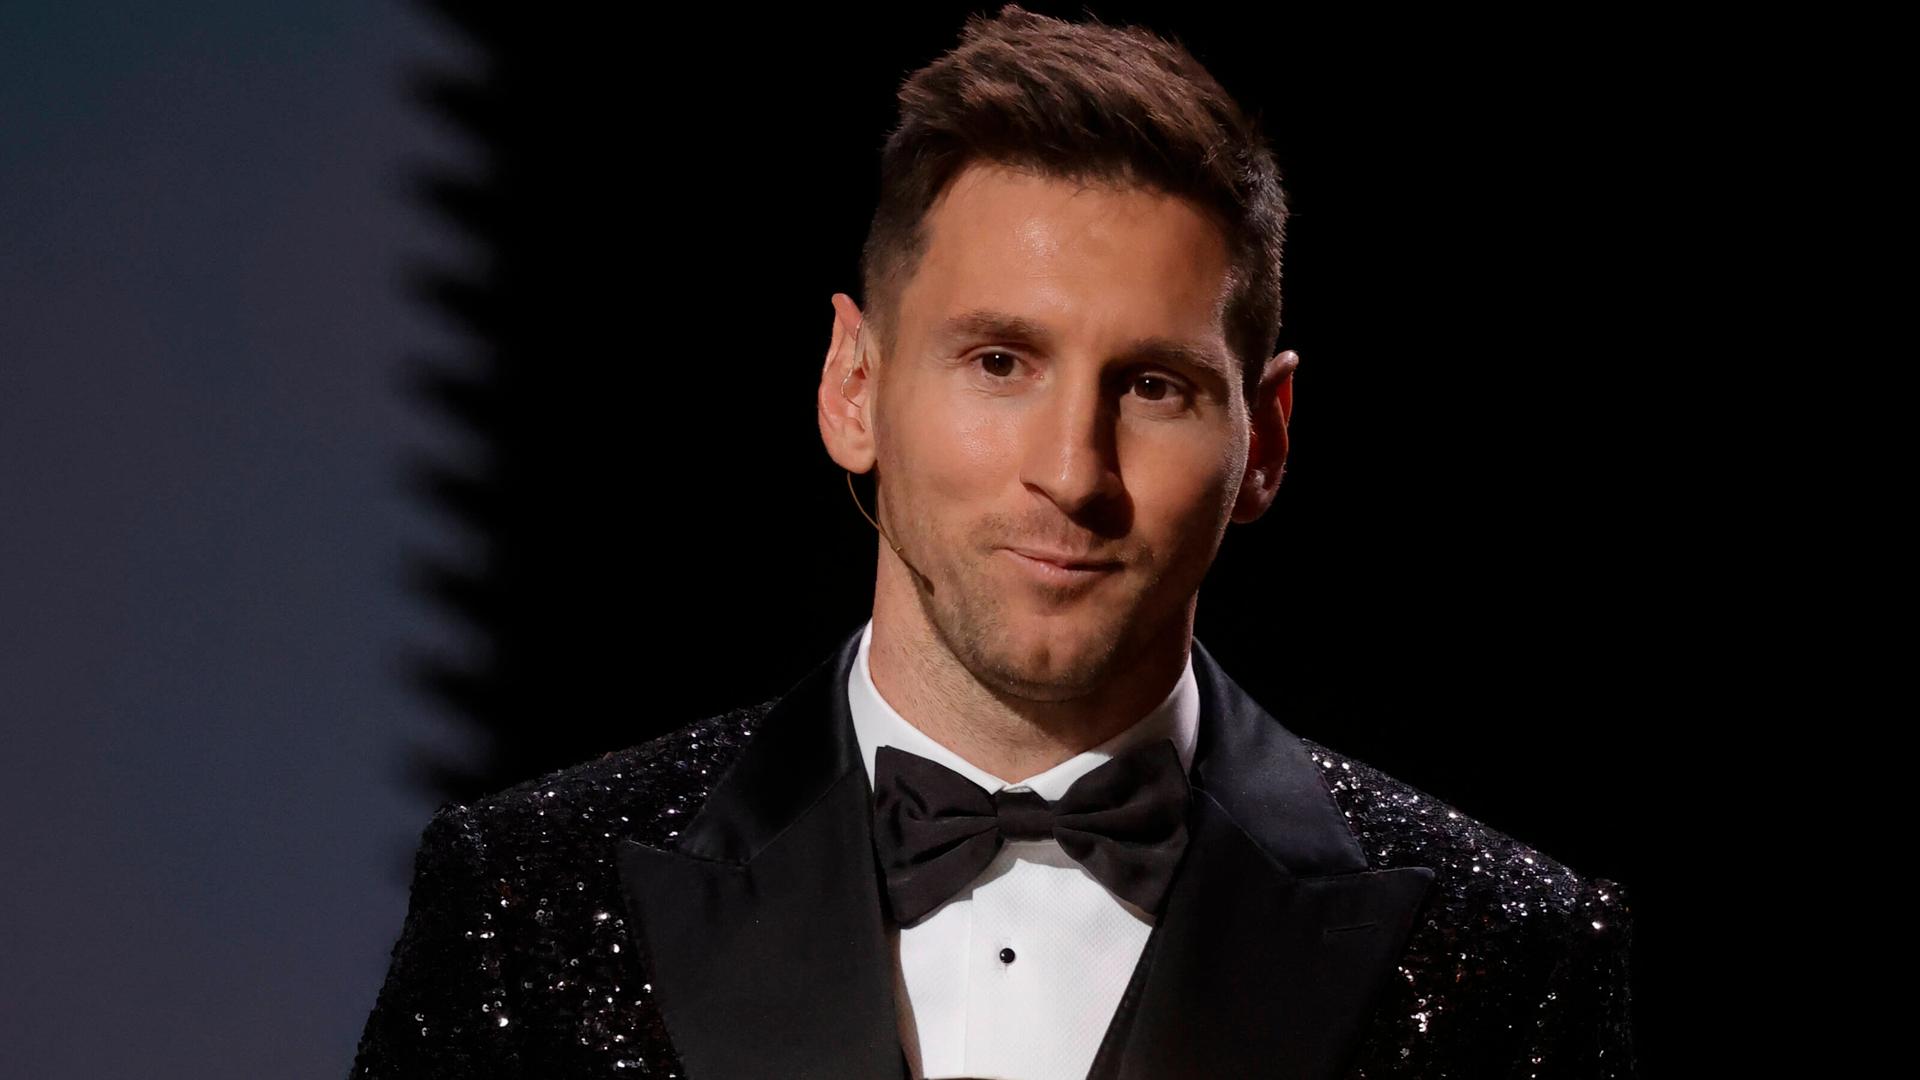 Der argentinische Fußball-Spieler Lionel Messi hat den Preis "Ballon d'Or" bekommen.